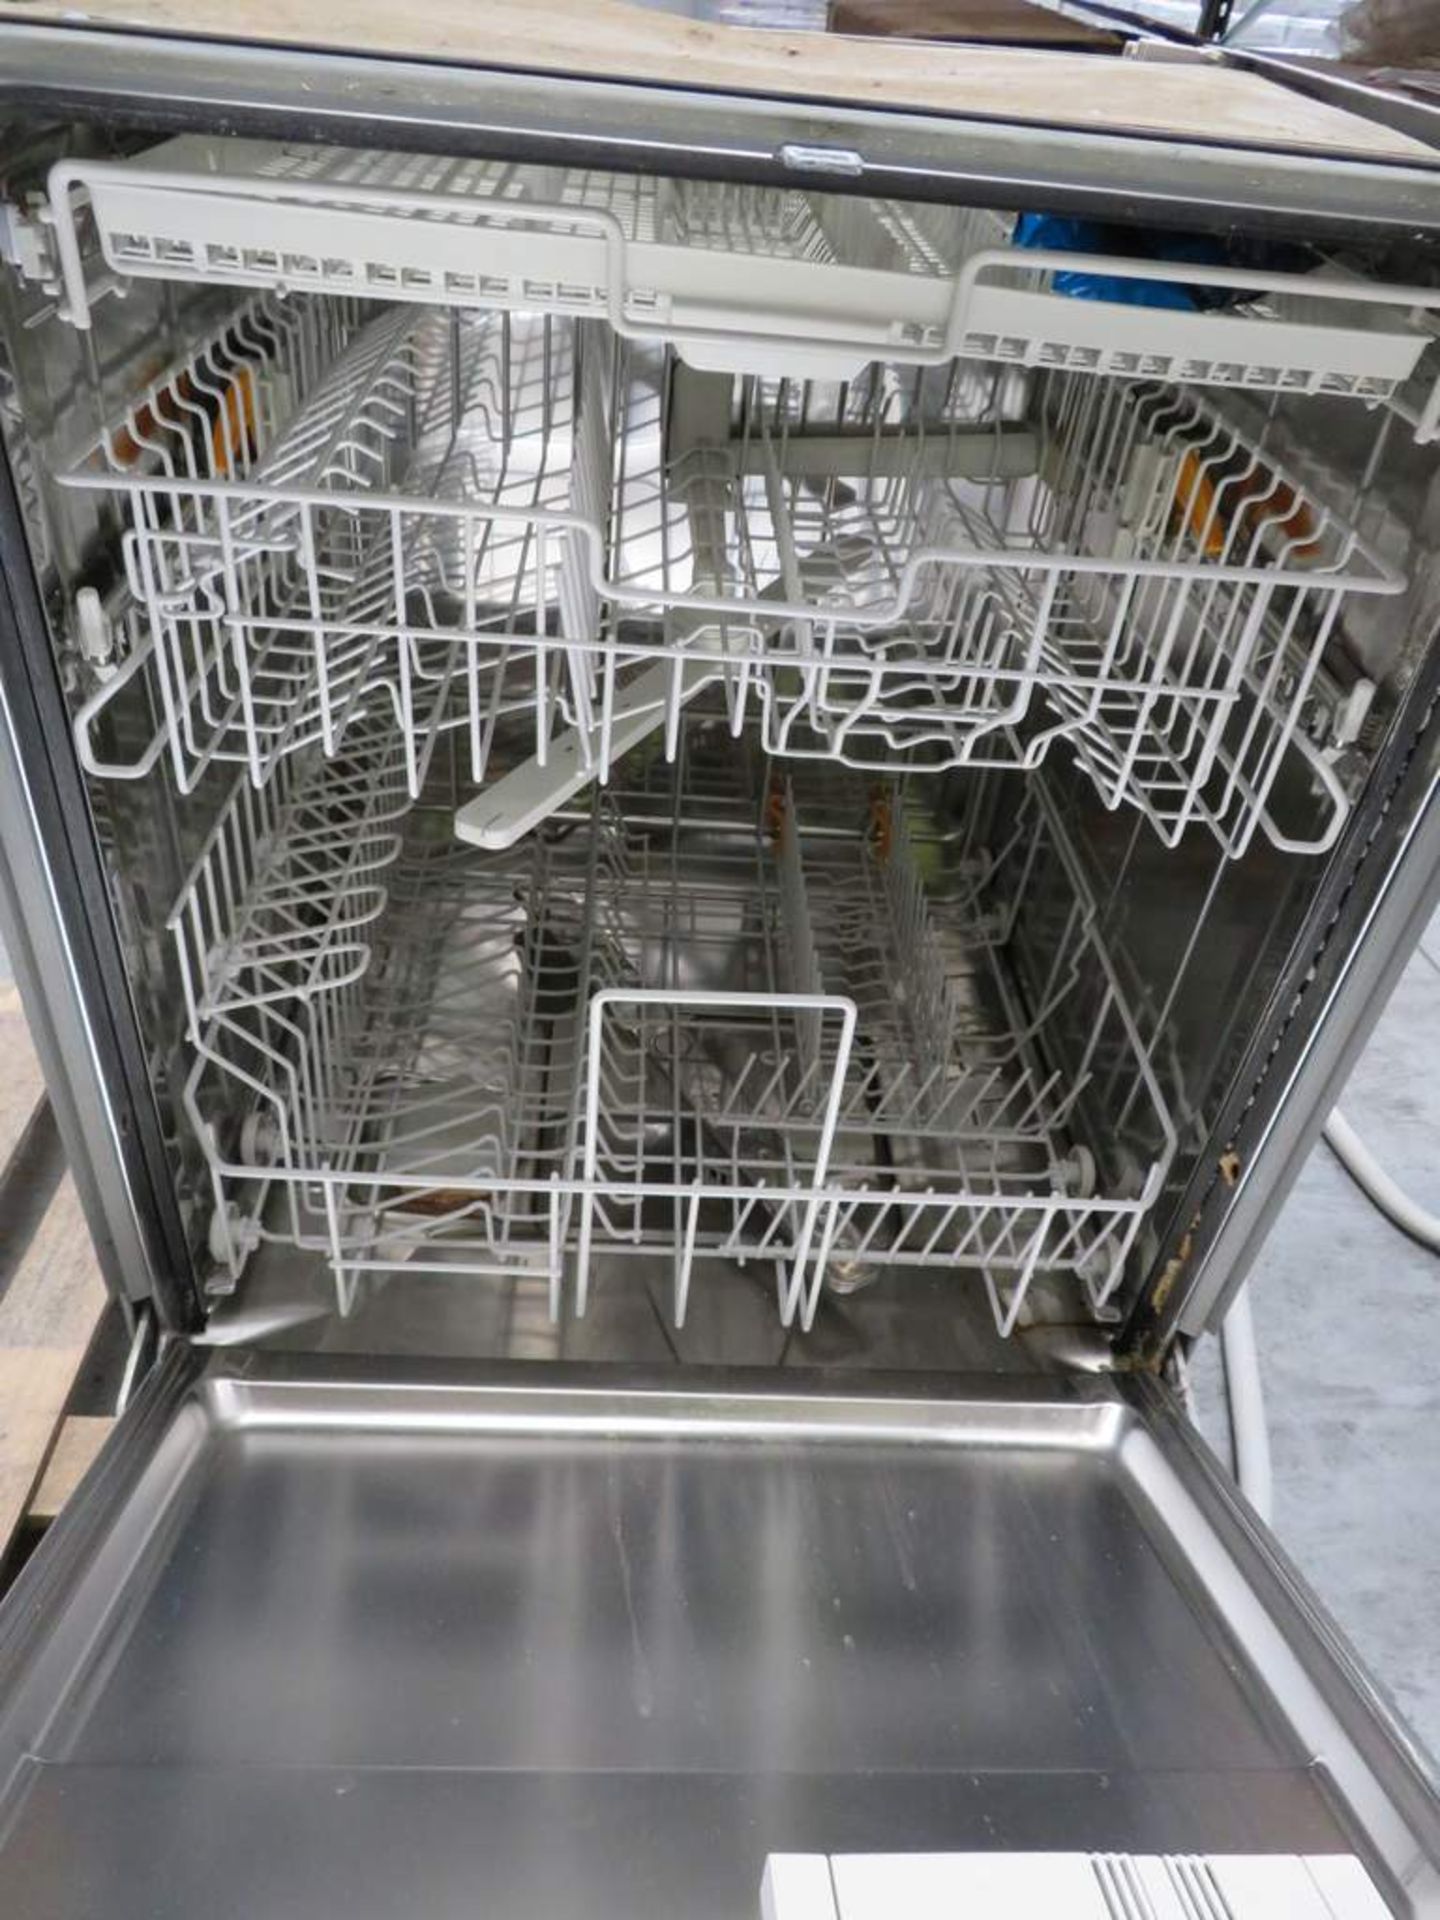 Miele Intergrated dishwasher. Model: G1272SCVi - Bild 3 aus 3